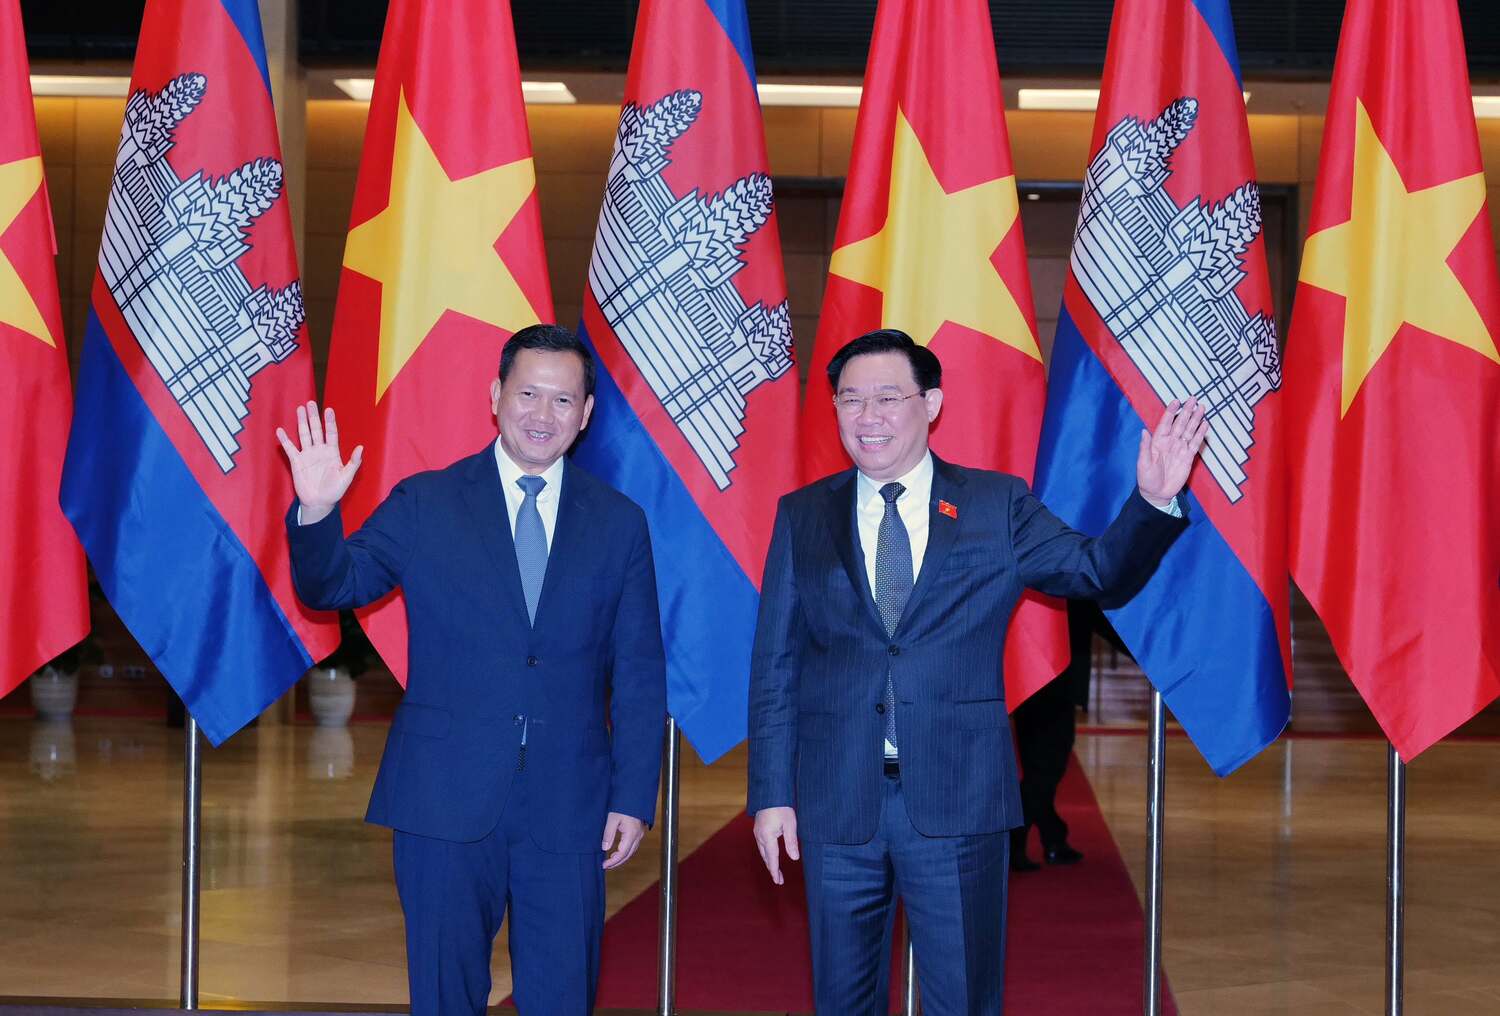 Chủ tịch Quốc hội Vương Đình Huệ mong muốn Thủ tướng Hun Manet và Chính phủ Hoàng gia Campuchia tiếp tục quan tâm, ủng hộ quan hệ hợp tác giữa cơ quan lập pháp hai nước. Ảnh: Hải Nguyễn